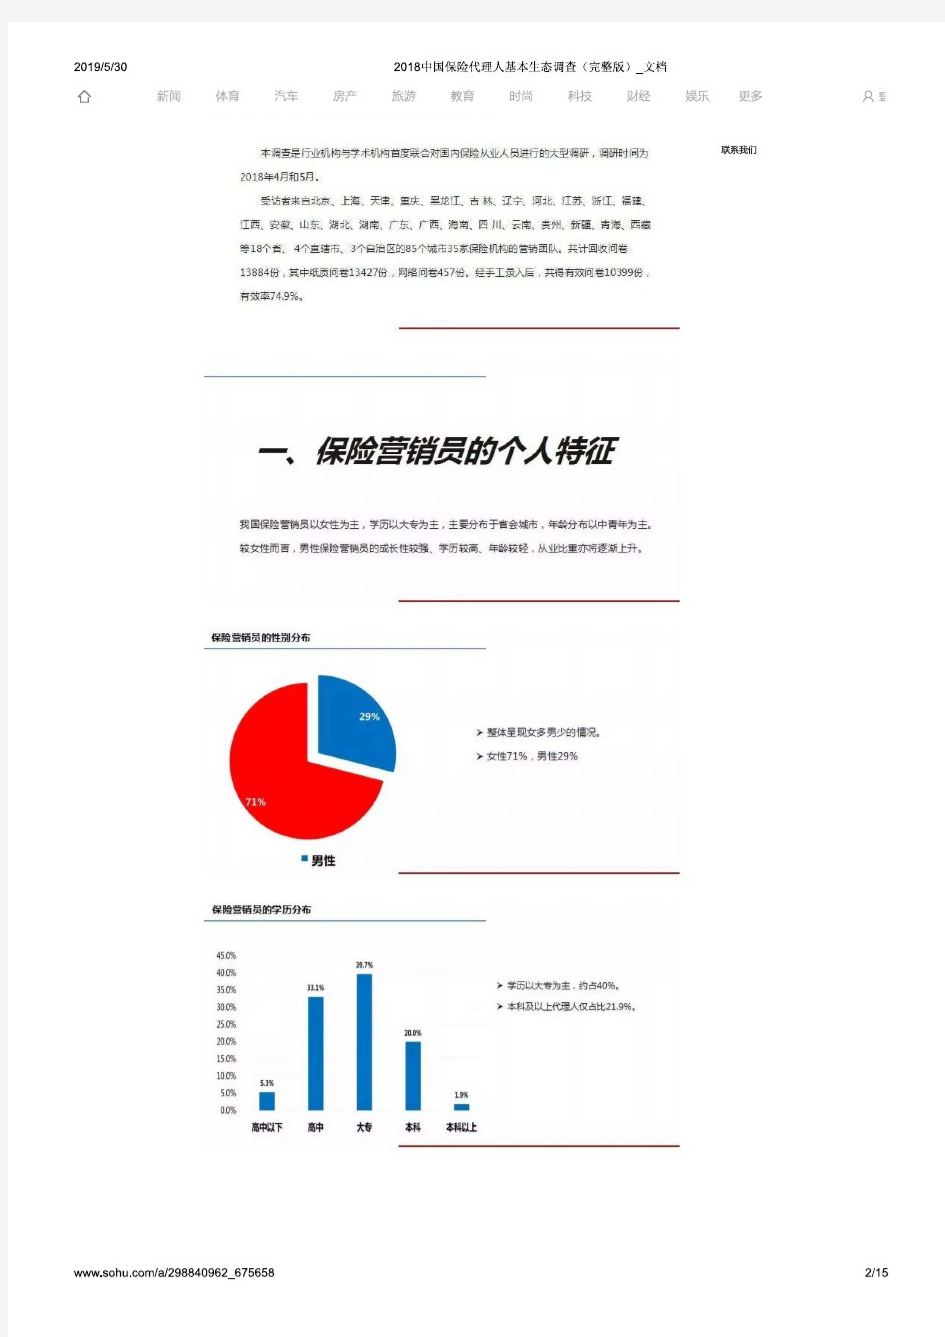 2018中国保险代理人基本生态调查(完整版)